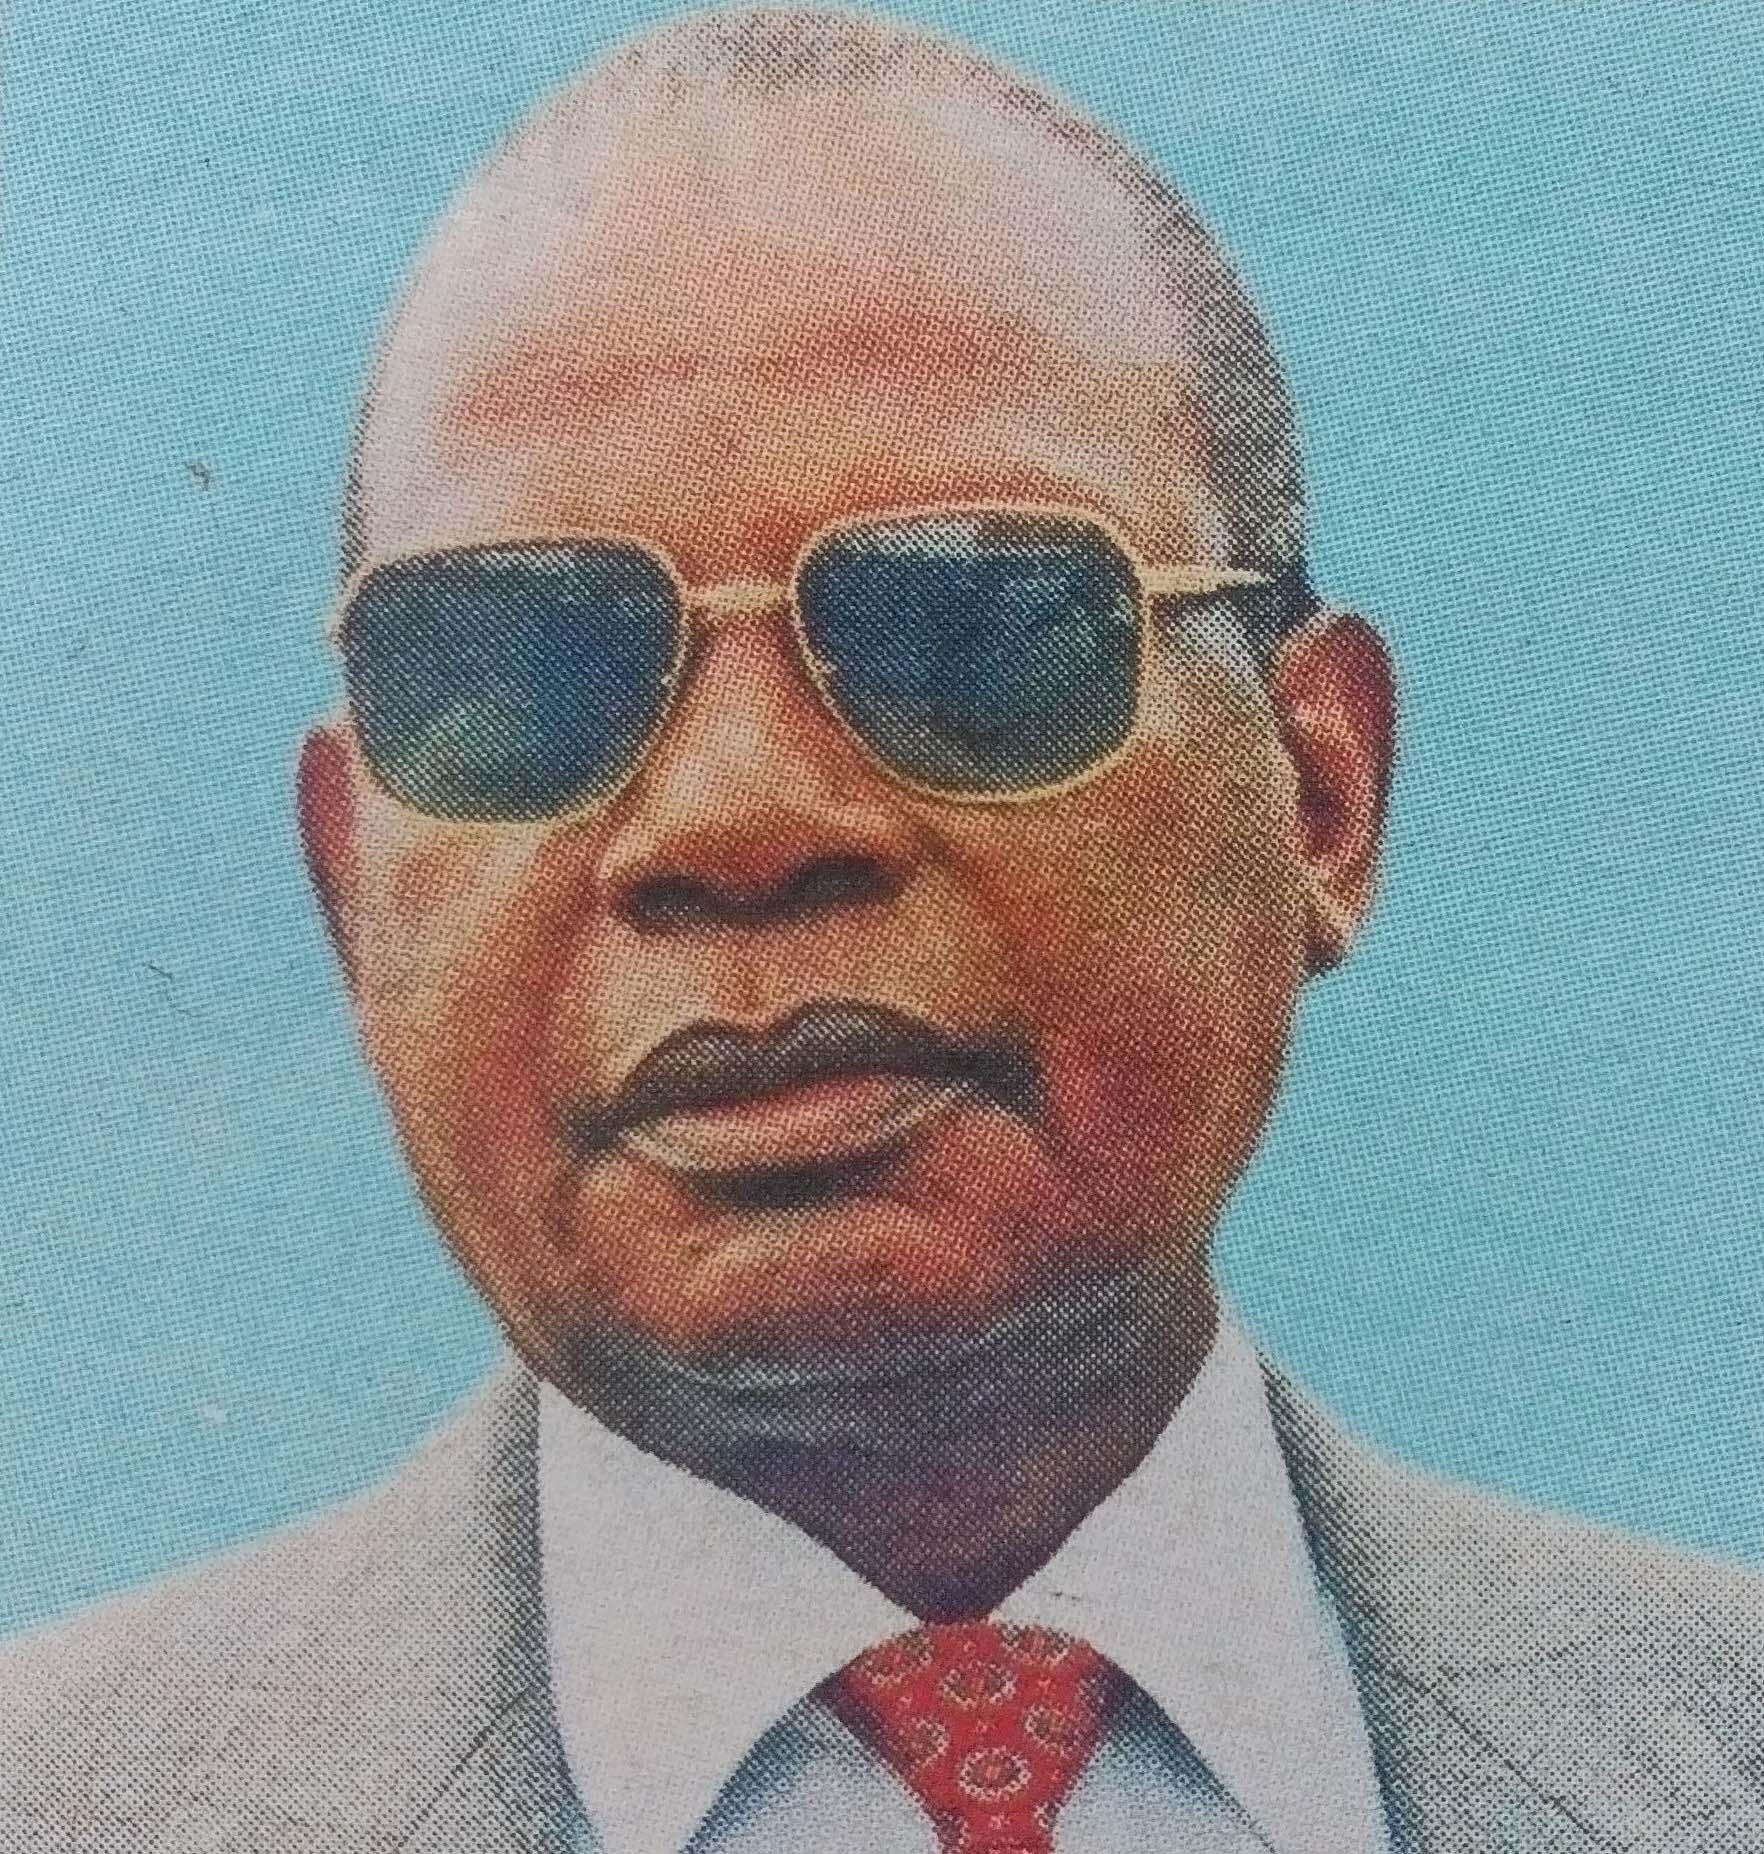 Obituary Image of Johnstone Mwandawiro Mwanjala